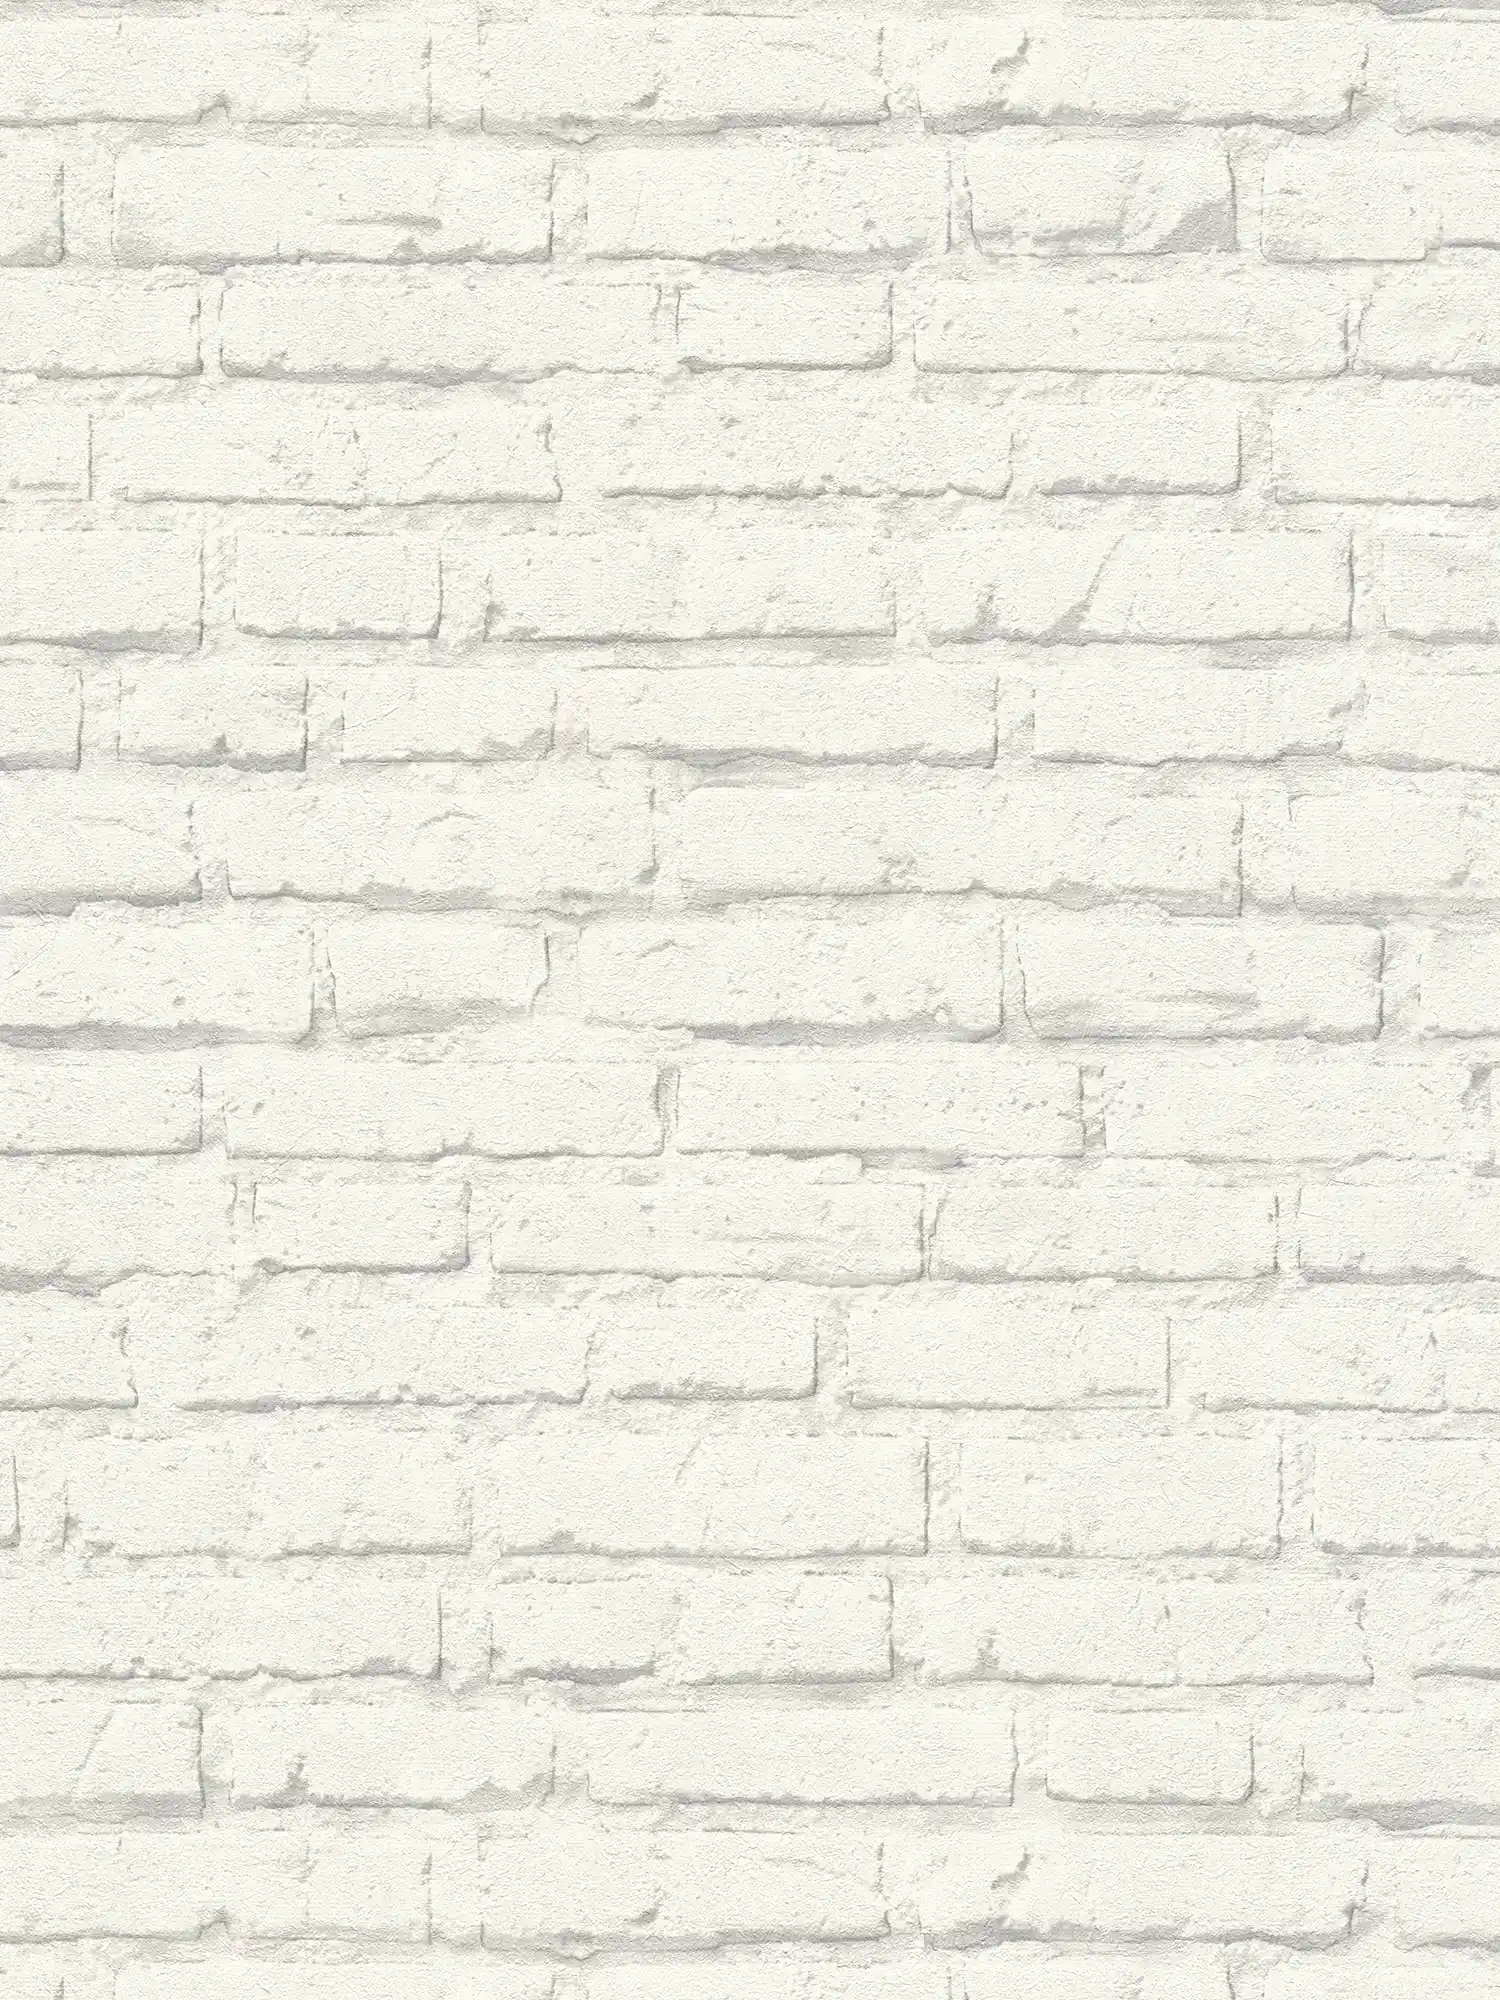 Steenbehang, witte bakstenen muur met structuurpatroon - Grijs, Wit
